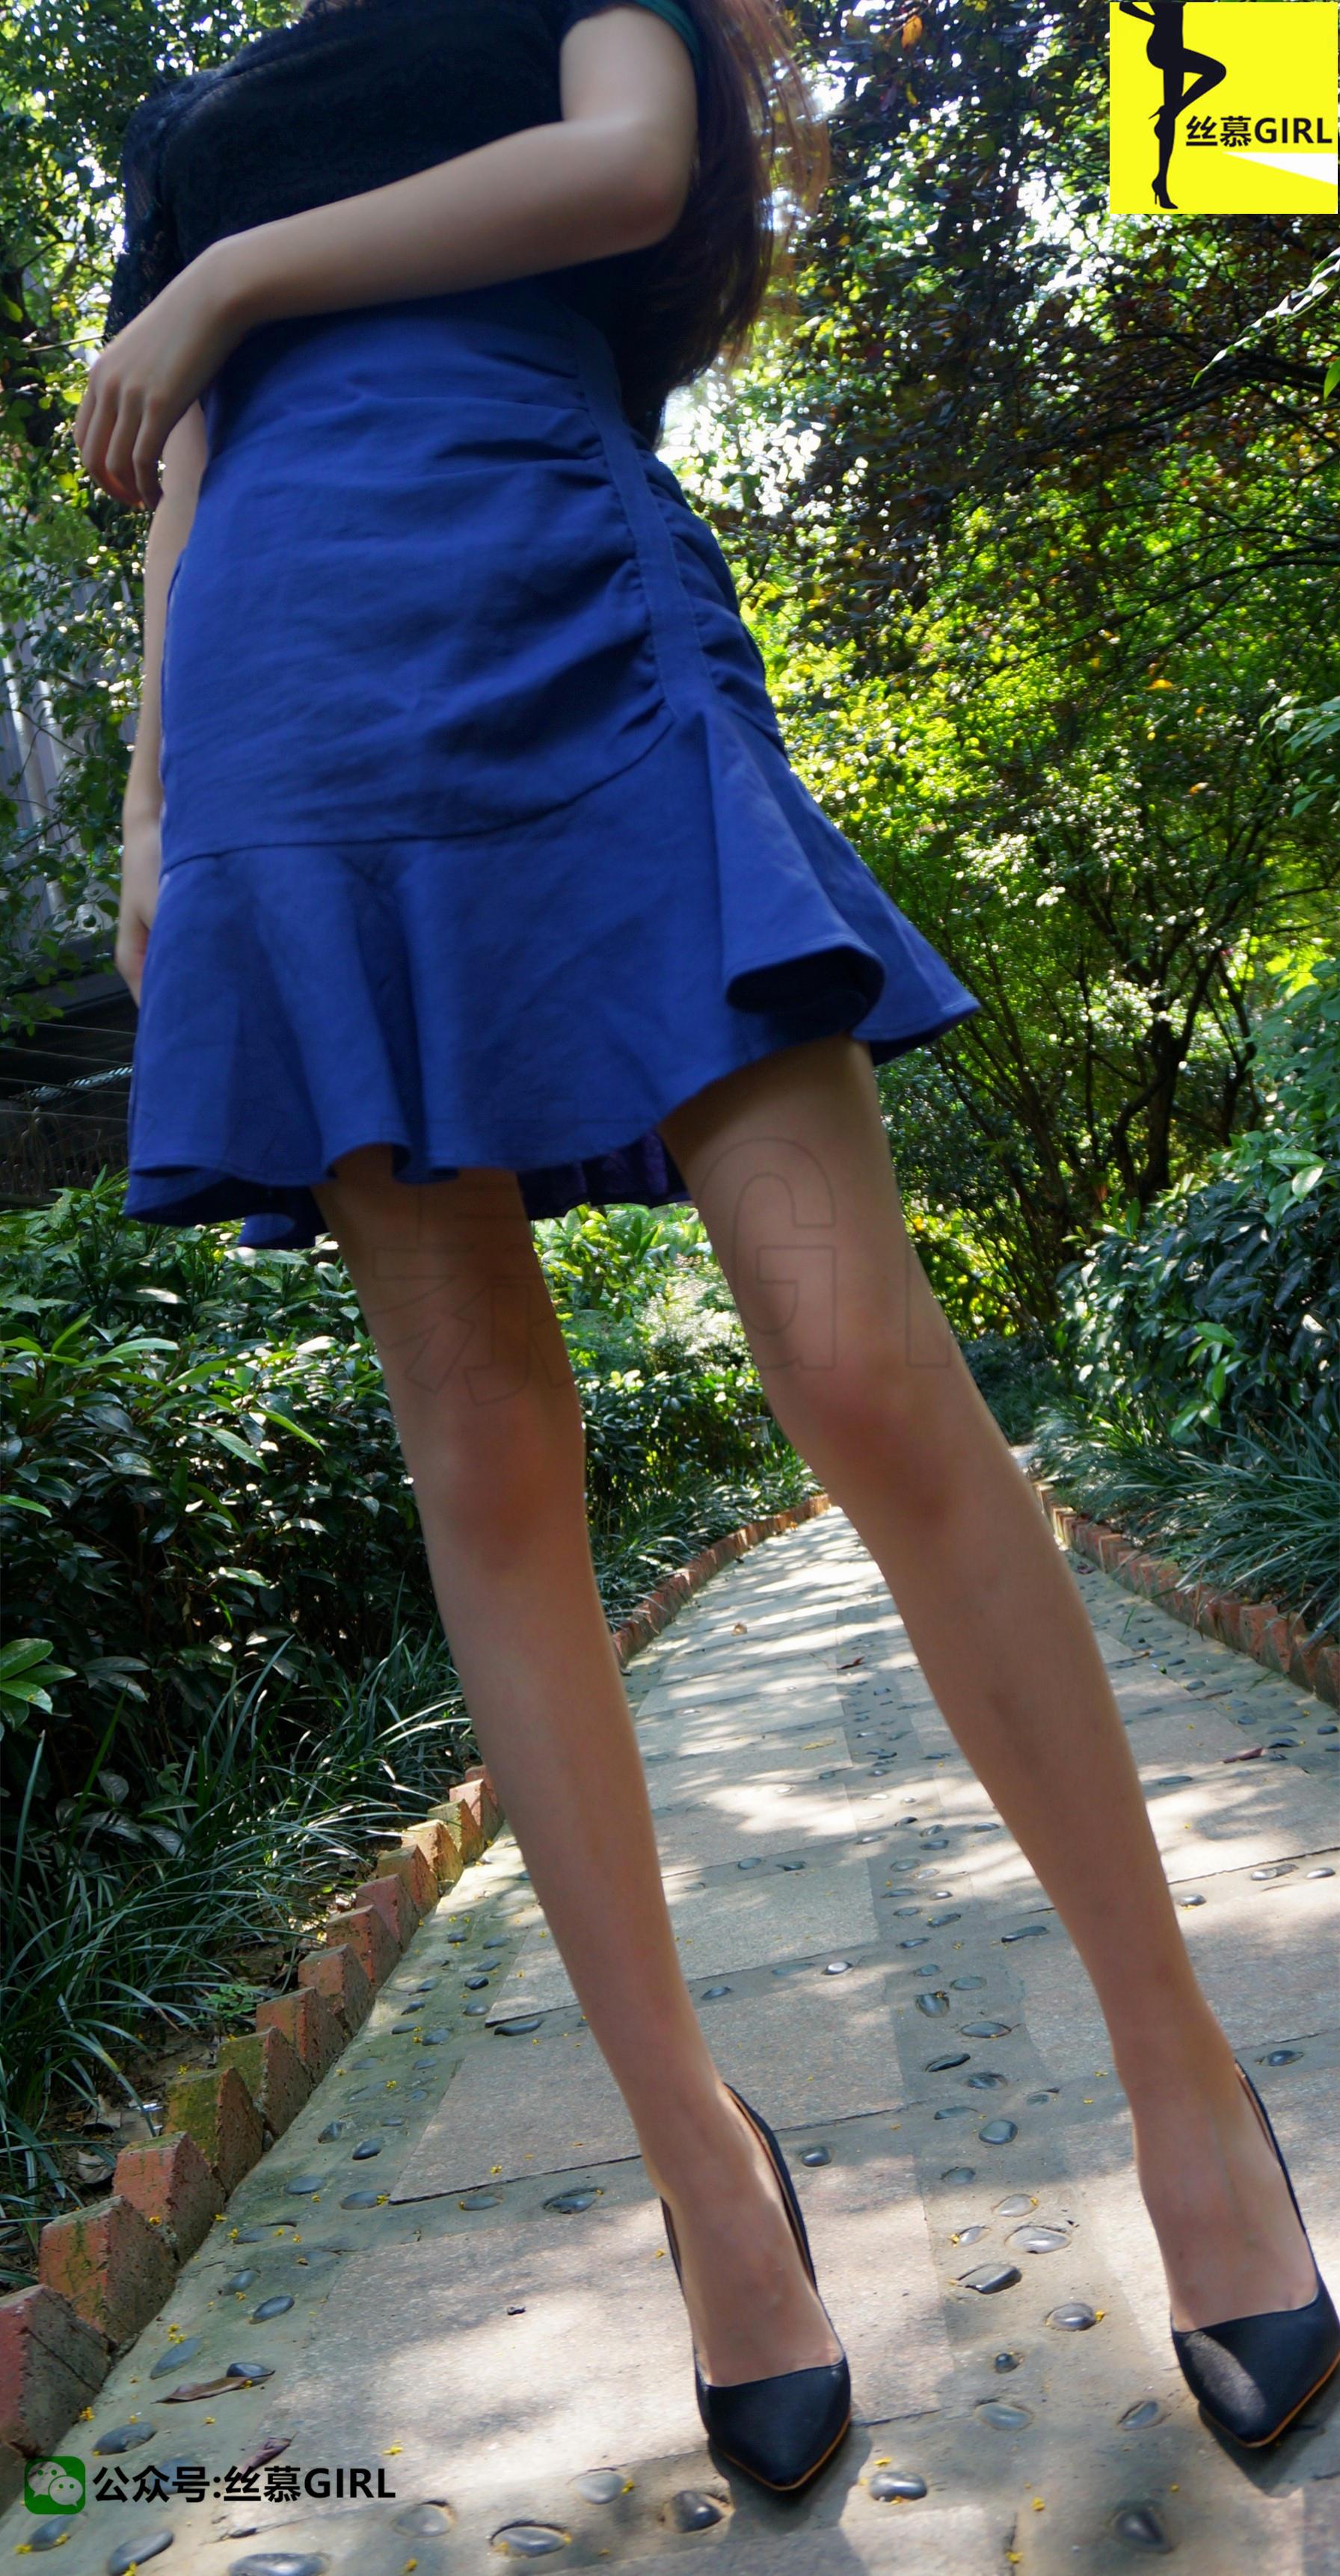 [丝慕GIRL]NO.001 模特：秋秋 《夏天尾巴上的肉丝》蓝色短裙加肉丝美腿性感写真,